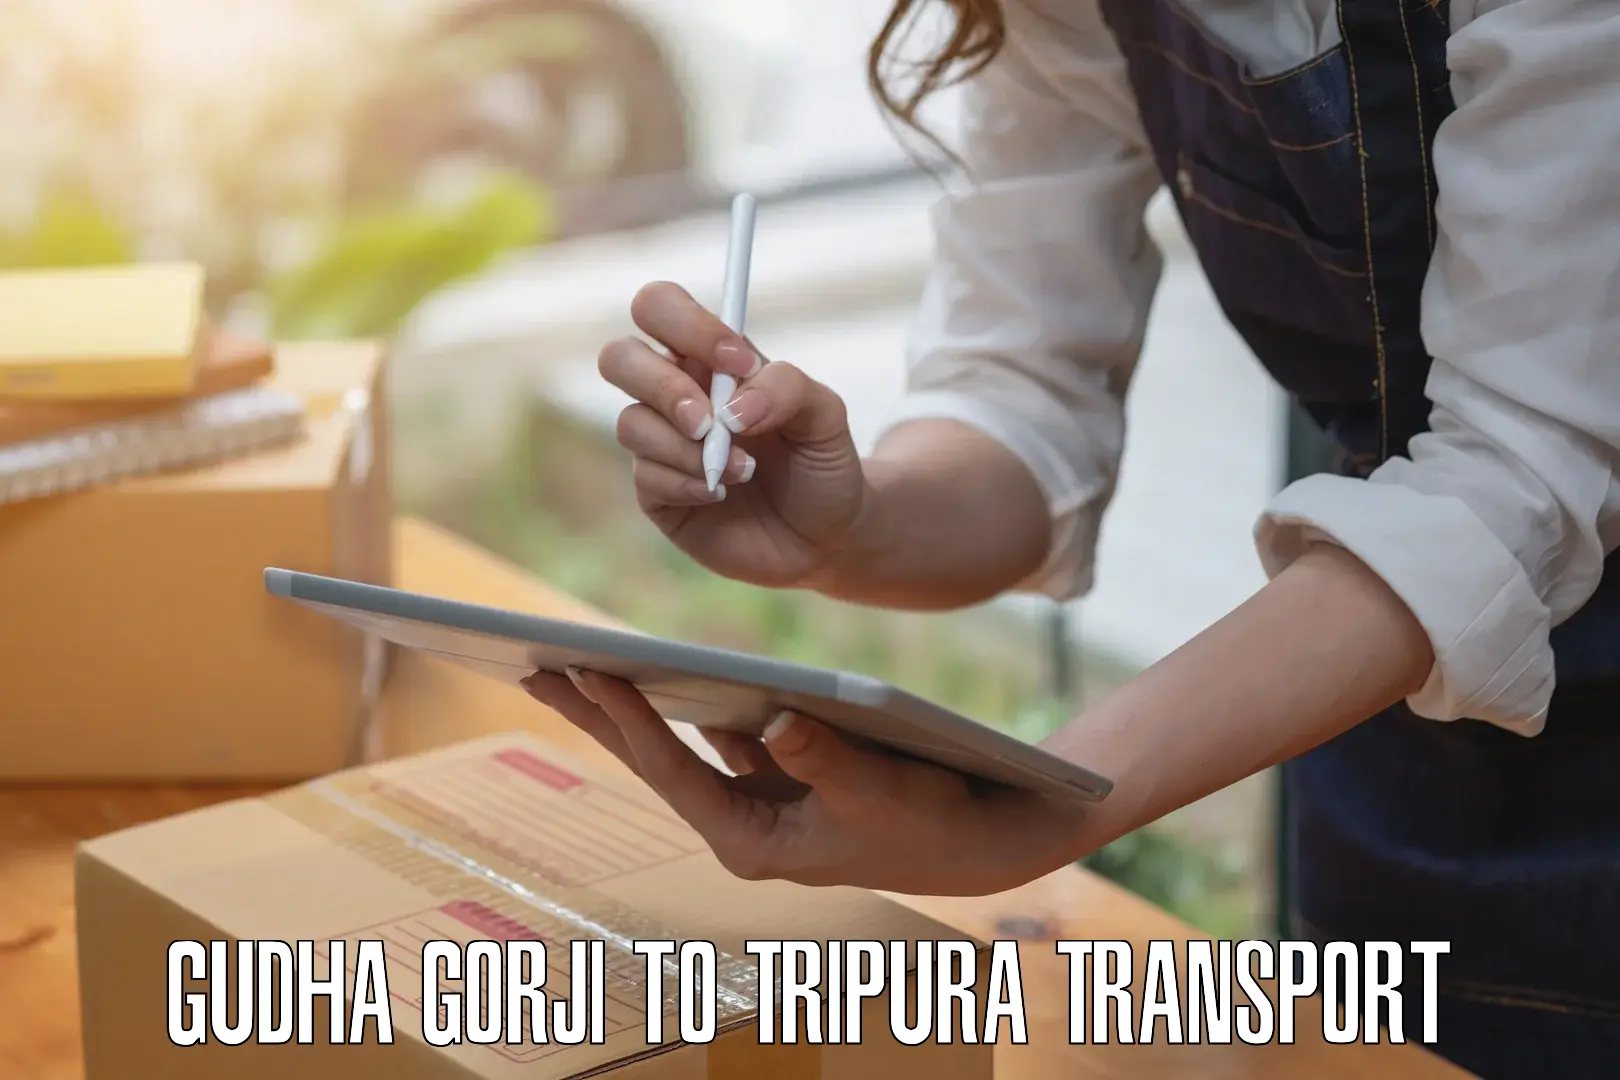 Road transport online services in Gudha Gorji to Aambasa